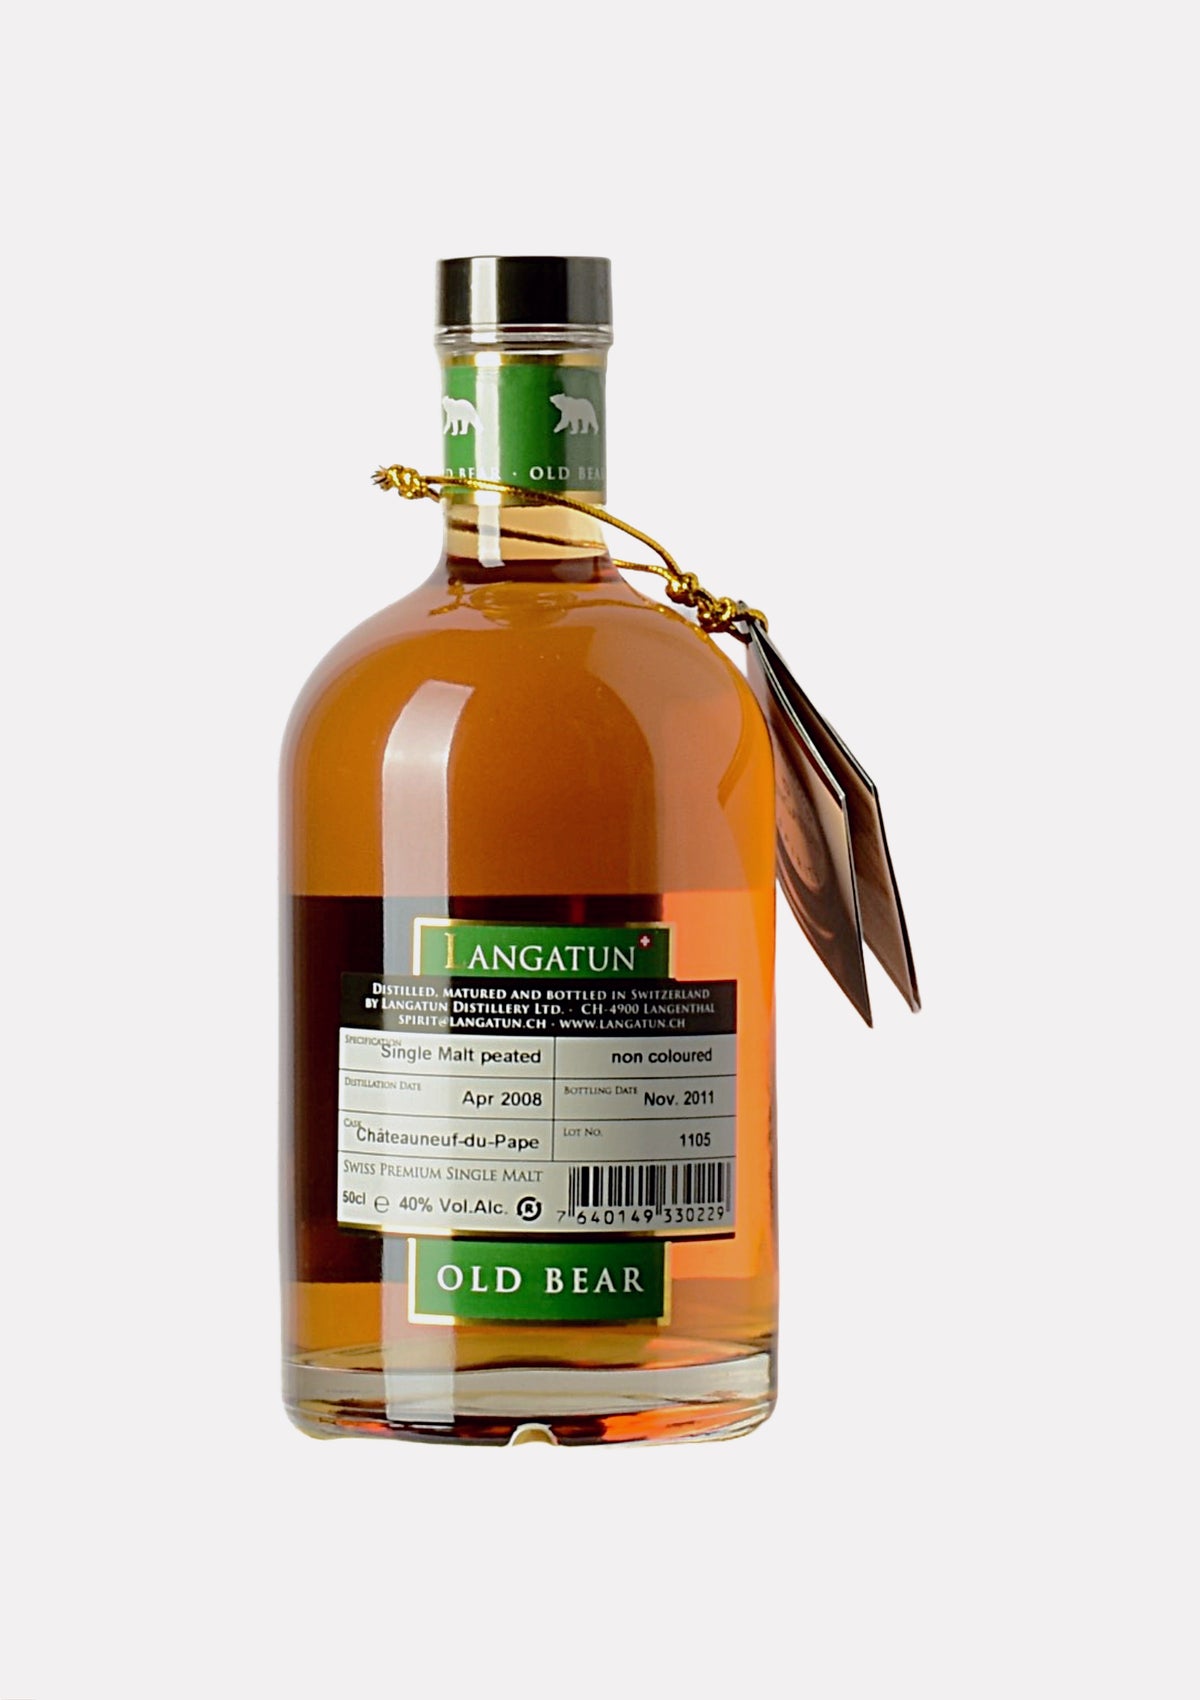 Langatun Smoky Whisky Old Bear 2008- 2011